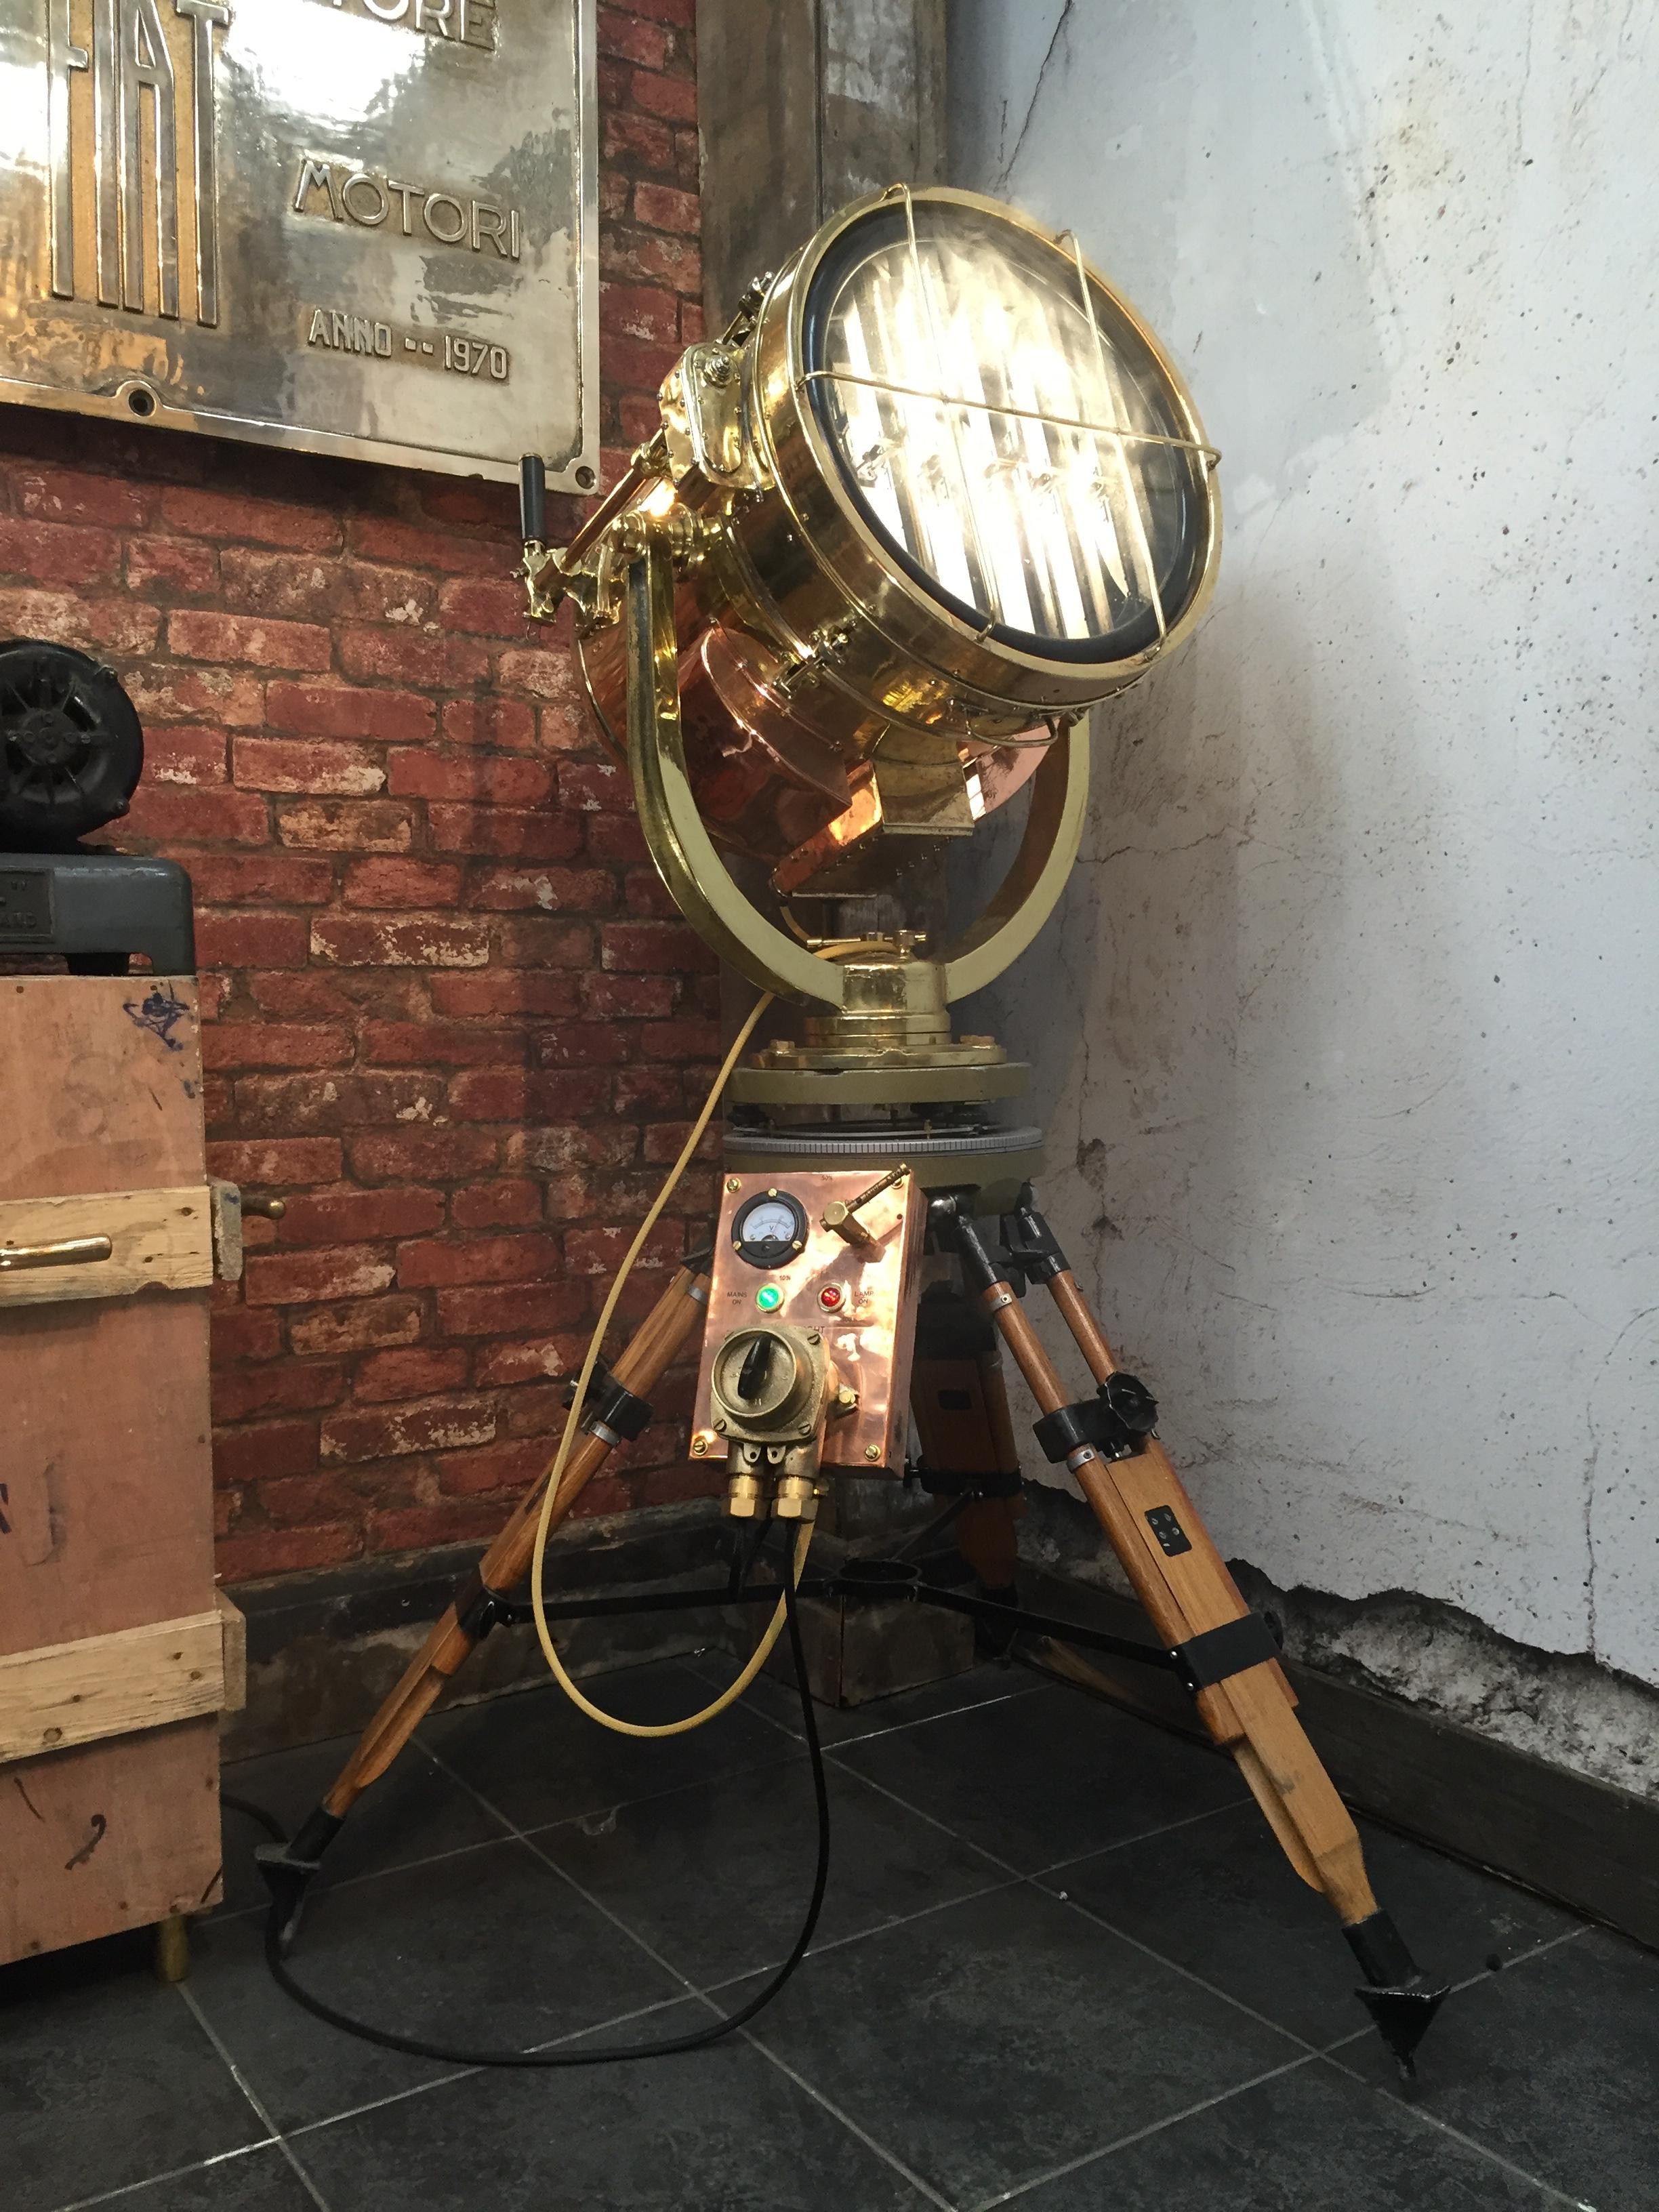 Il s'agit d'une lampe de signalisation de jour Shonan Kosakusho fabriquée en 1981, mariée à un trépied gyroscope militaire russe. 

Récupérés sur des navires de guerre du milieu du siècle, Shonan en a fabriqué pendant la Seconde Guerre mondiale,